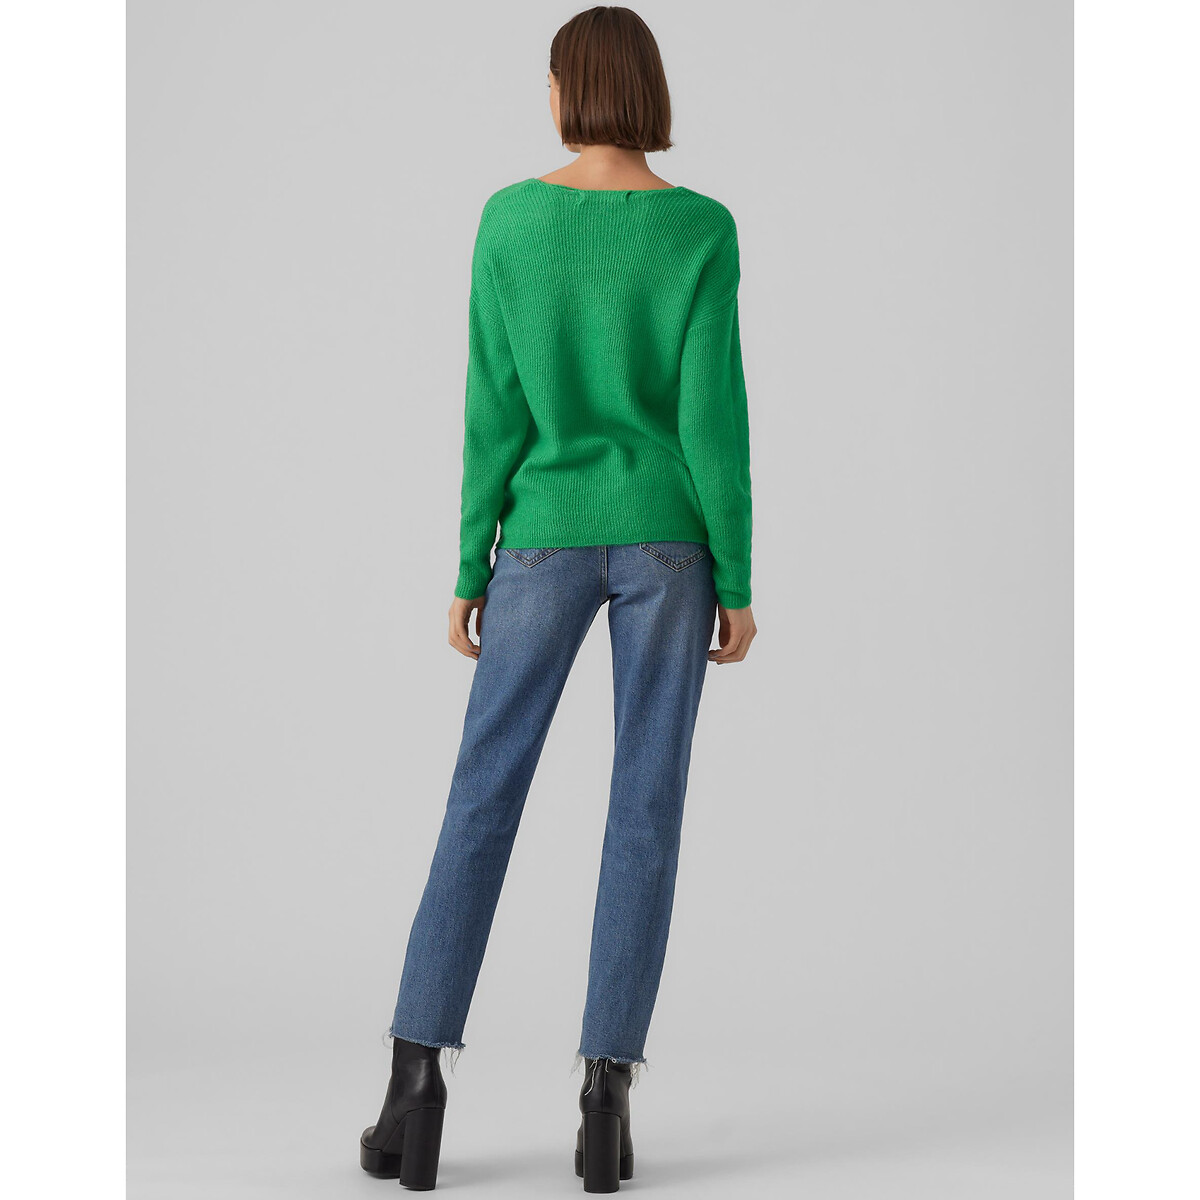 Пуловер Из пышного трикотажа V-образный вырез L зеленый LaRedoute, размер L - фото 4